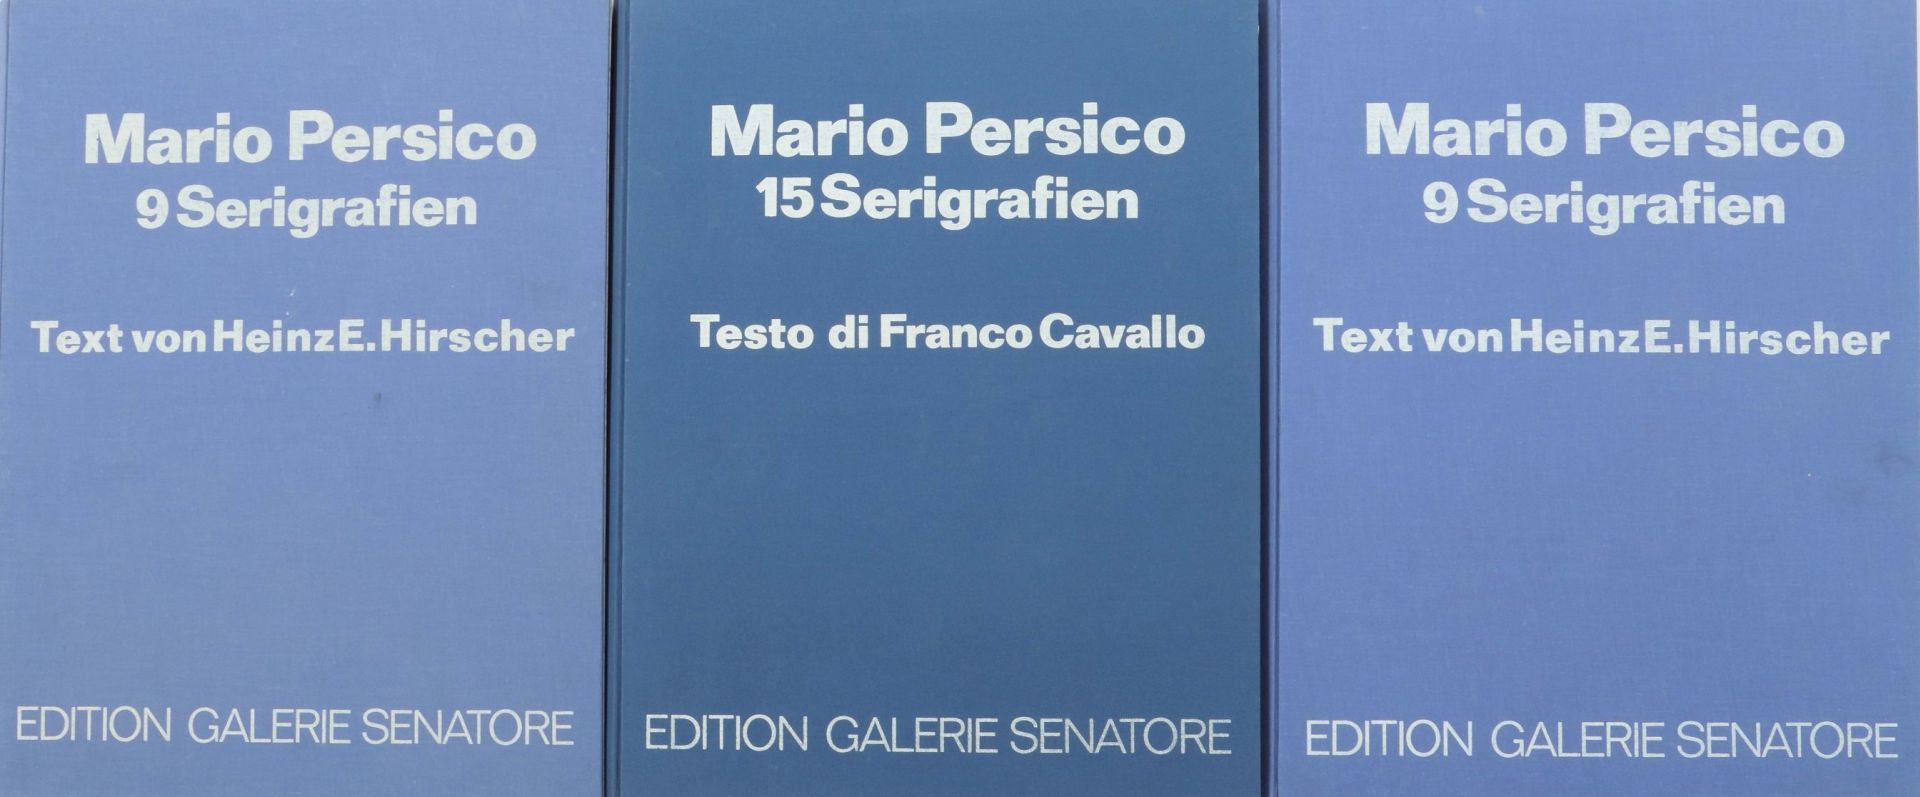 Persico, Mario geb. 1930 in Italien.